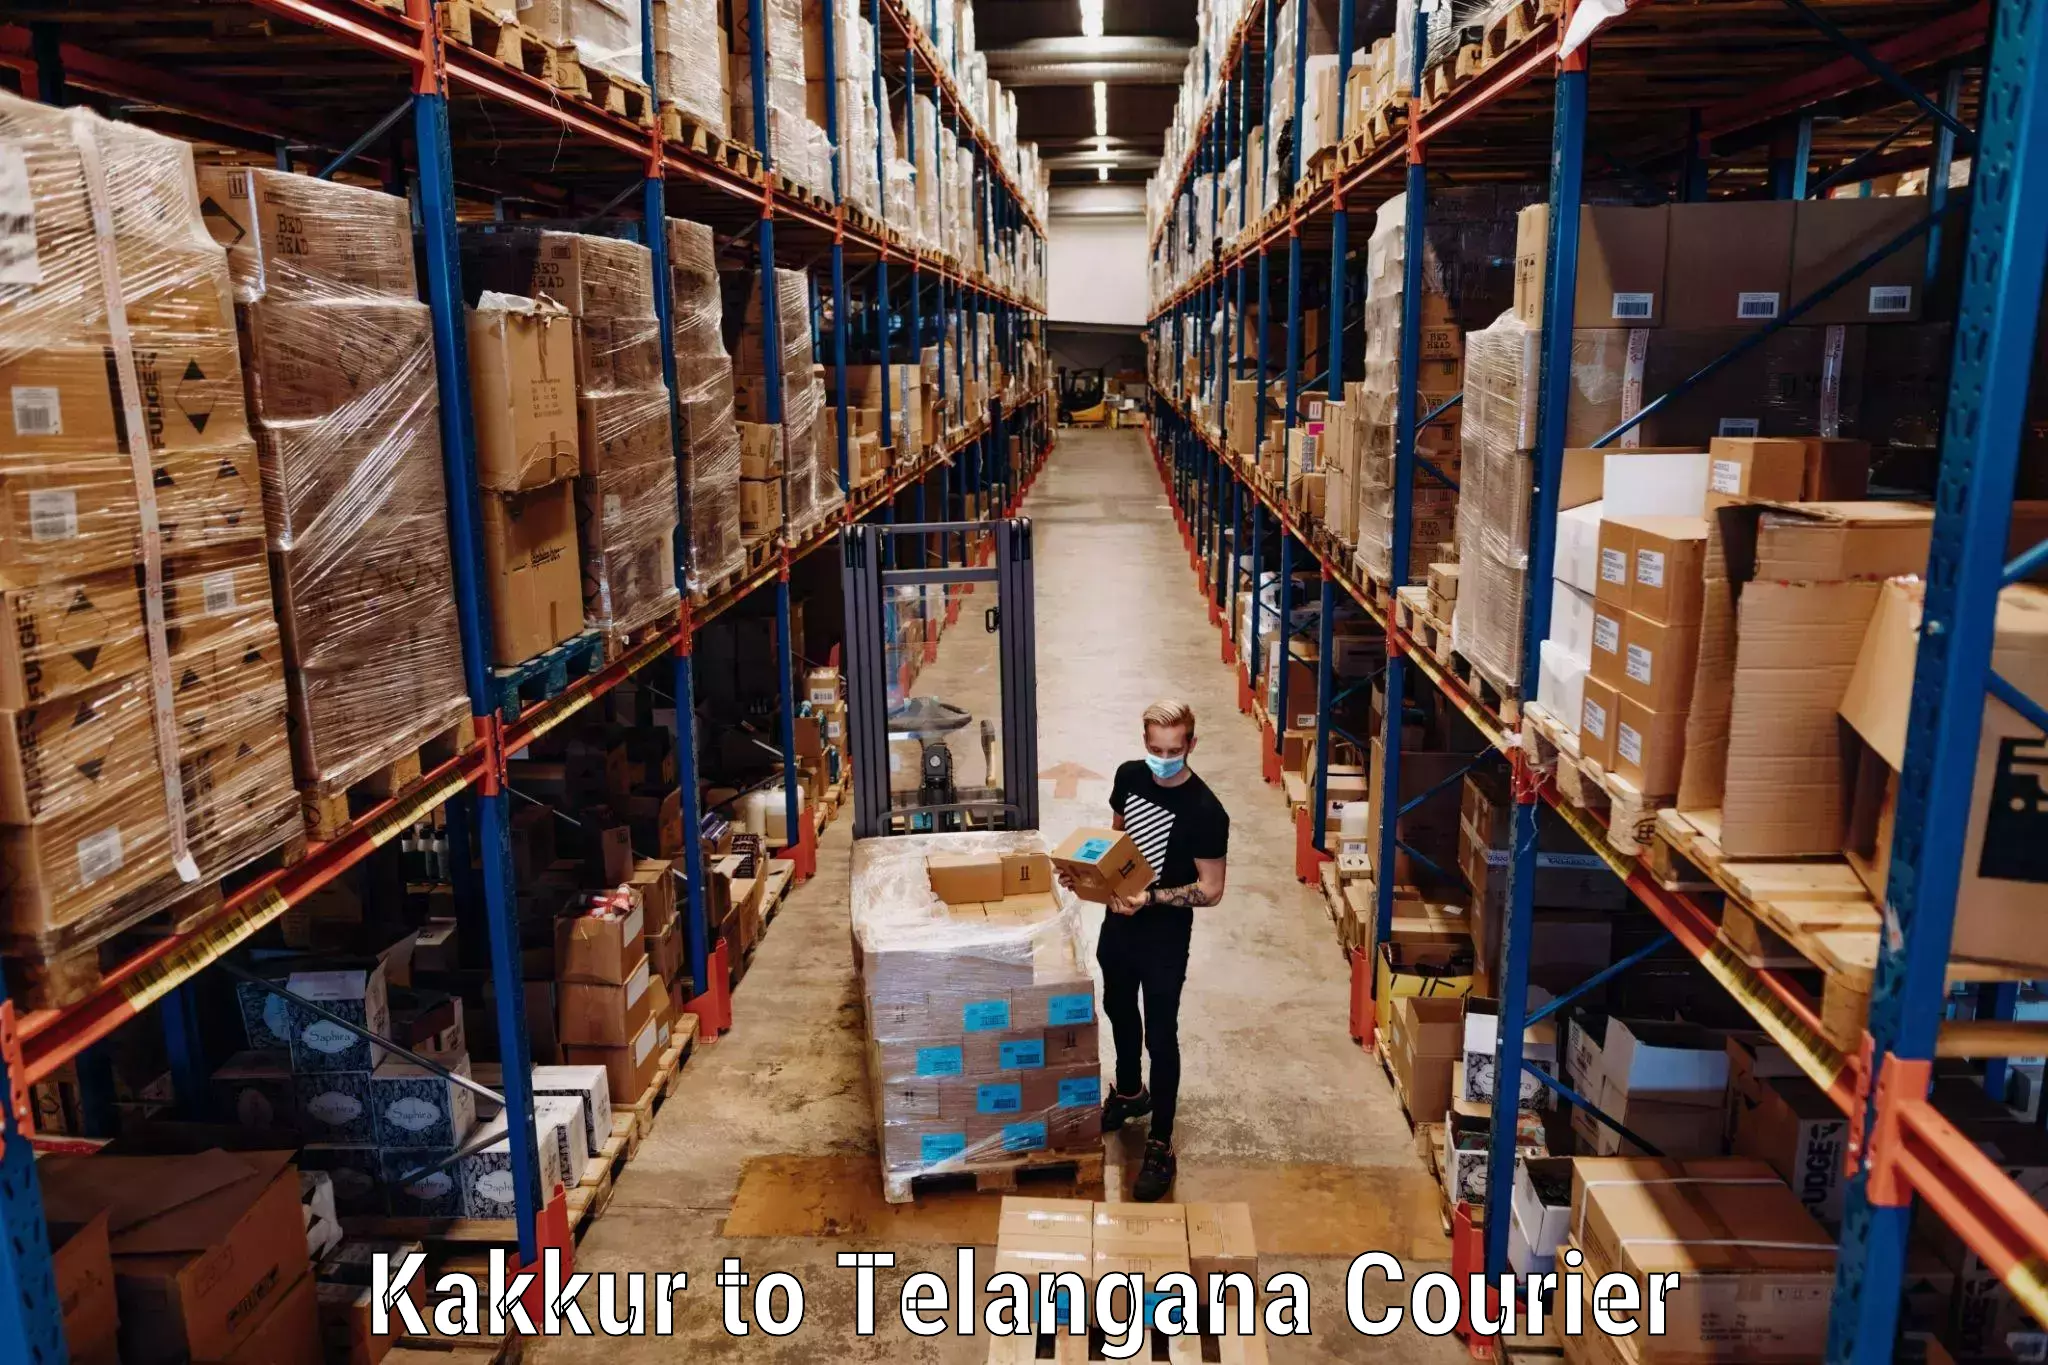 Baggage transport technology Kakkur to Pathipaka